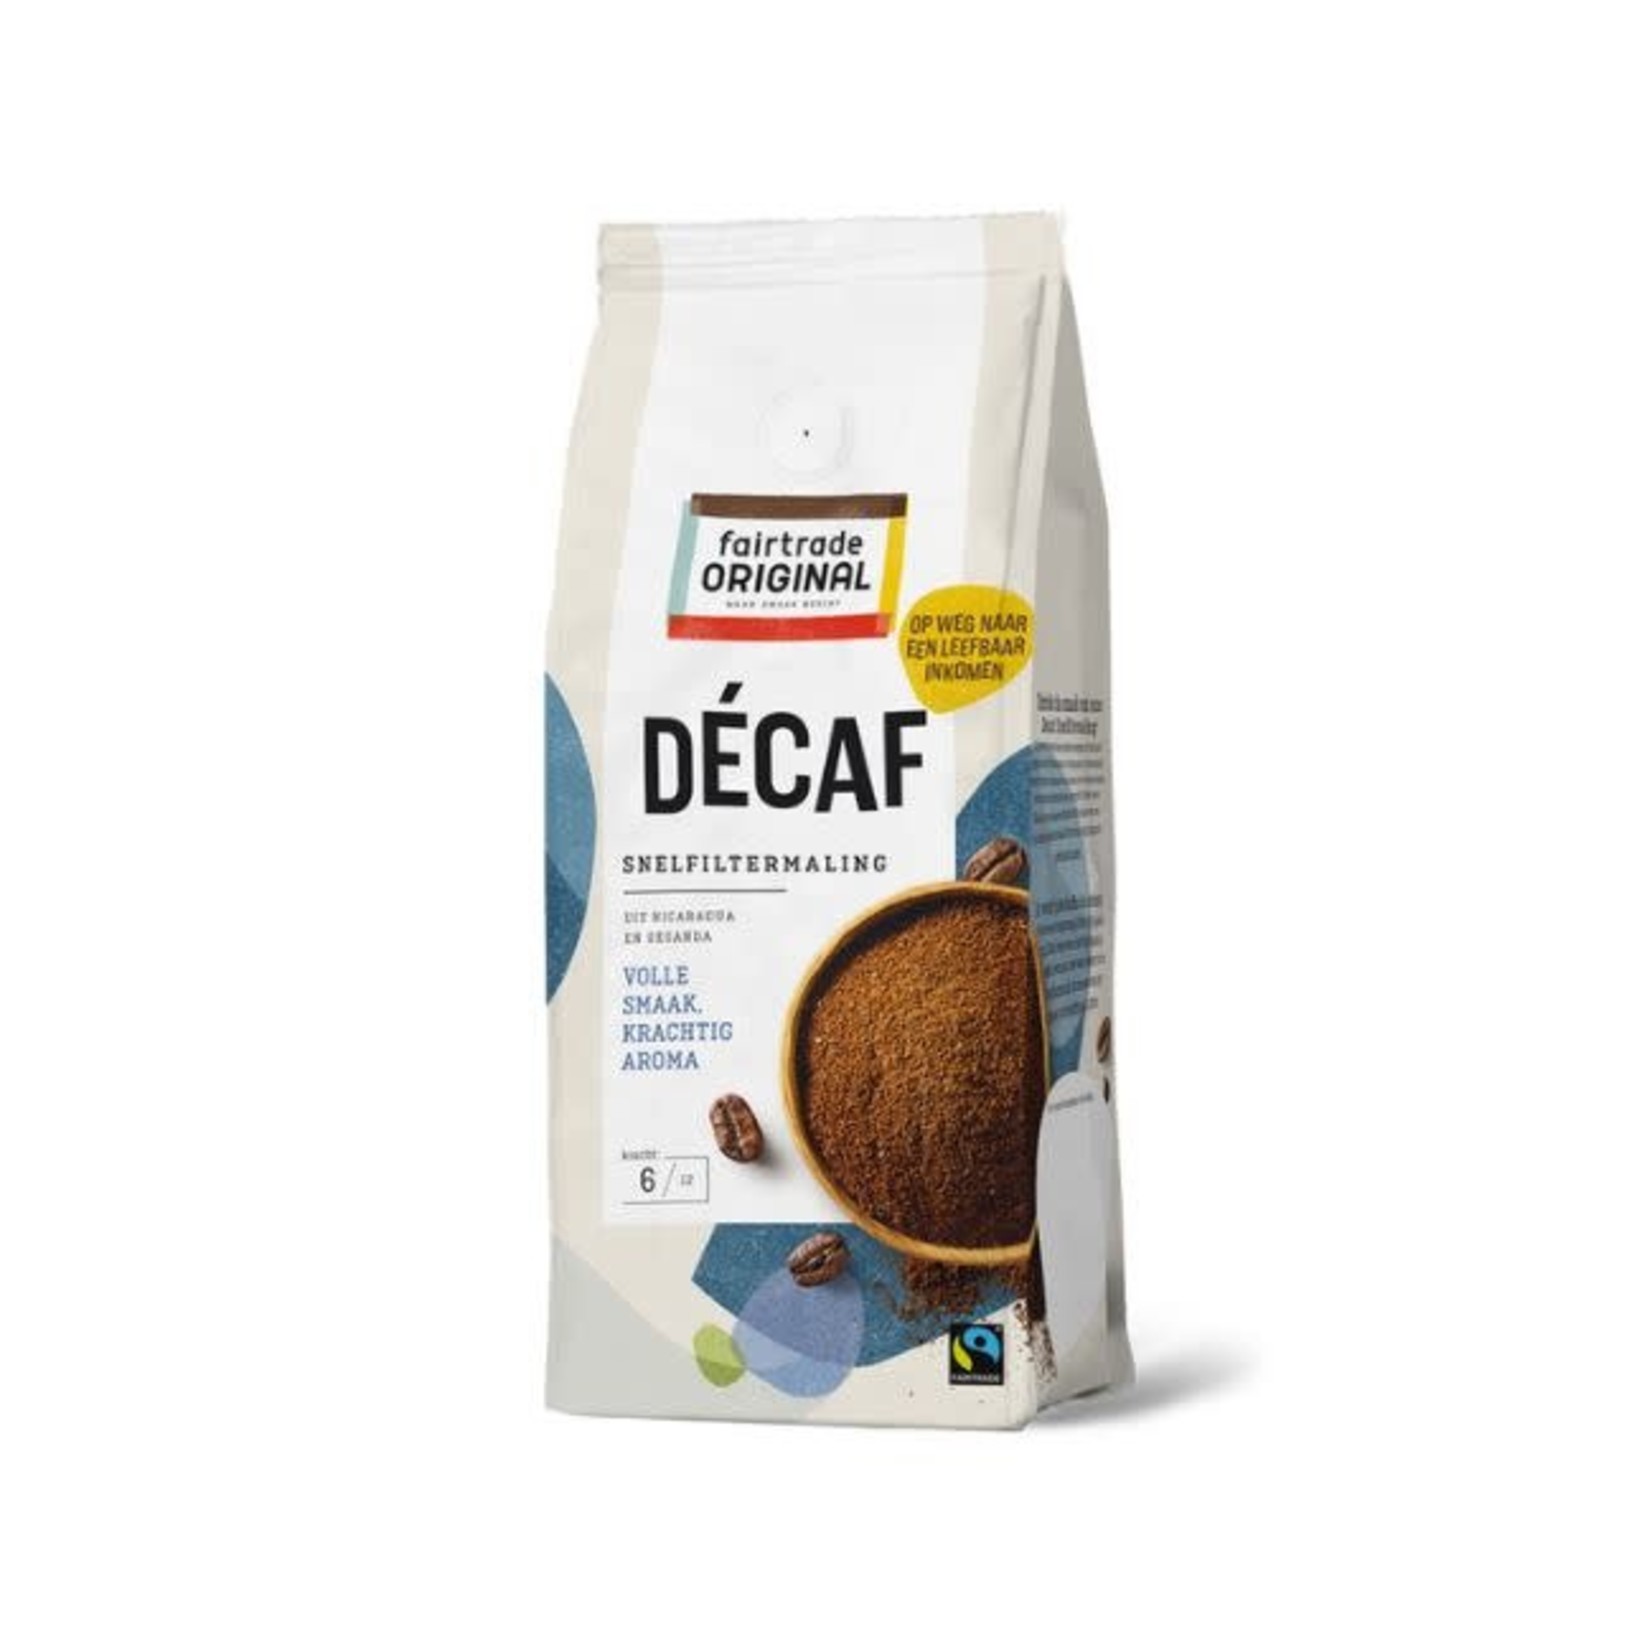 Fairtrade Original Koffie décafe snf MH 250g